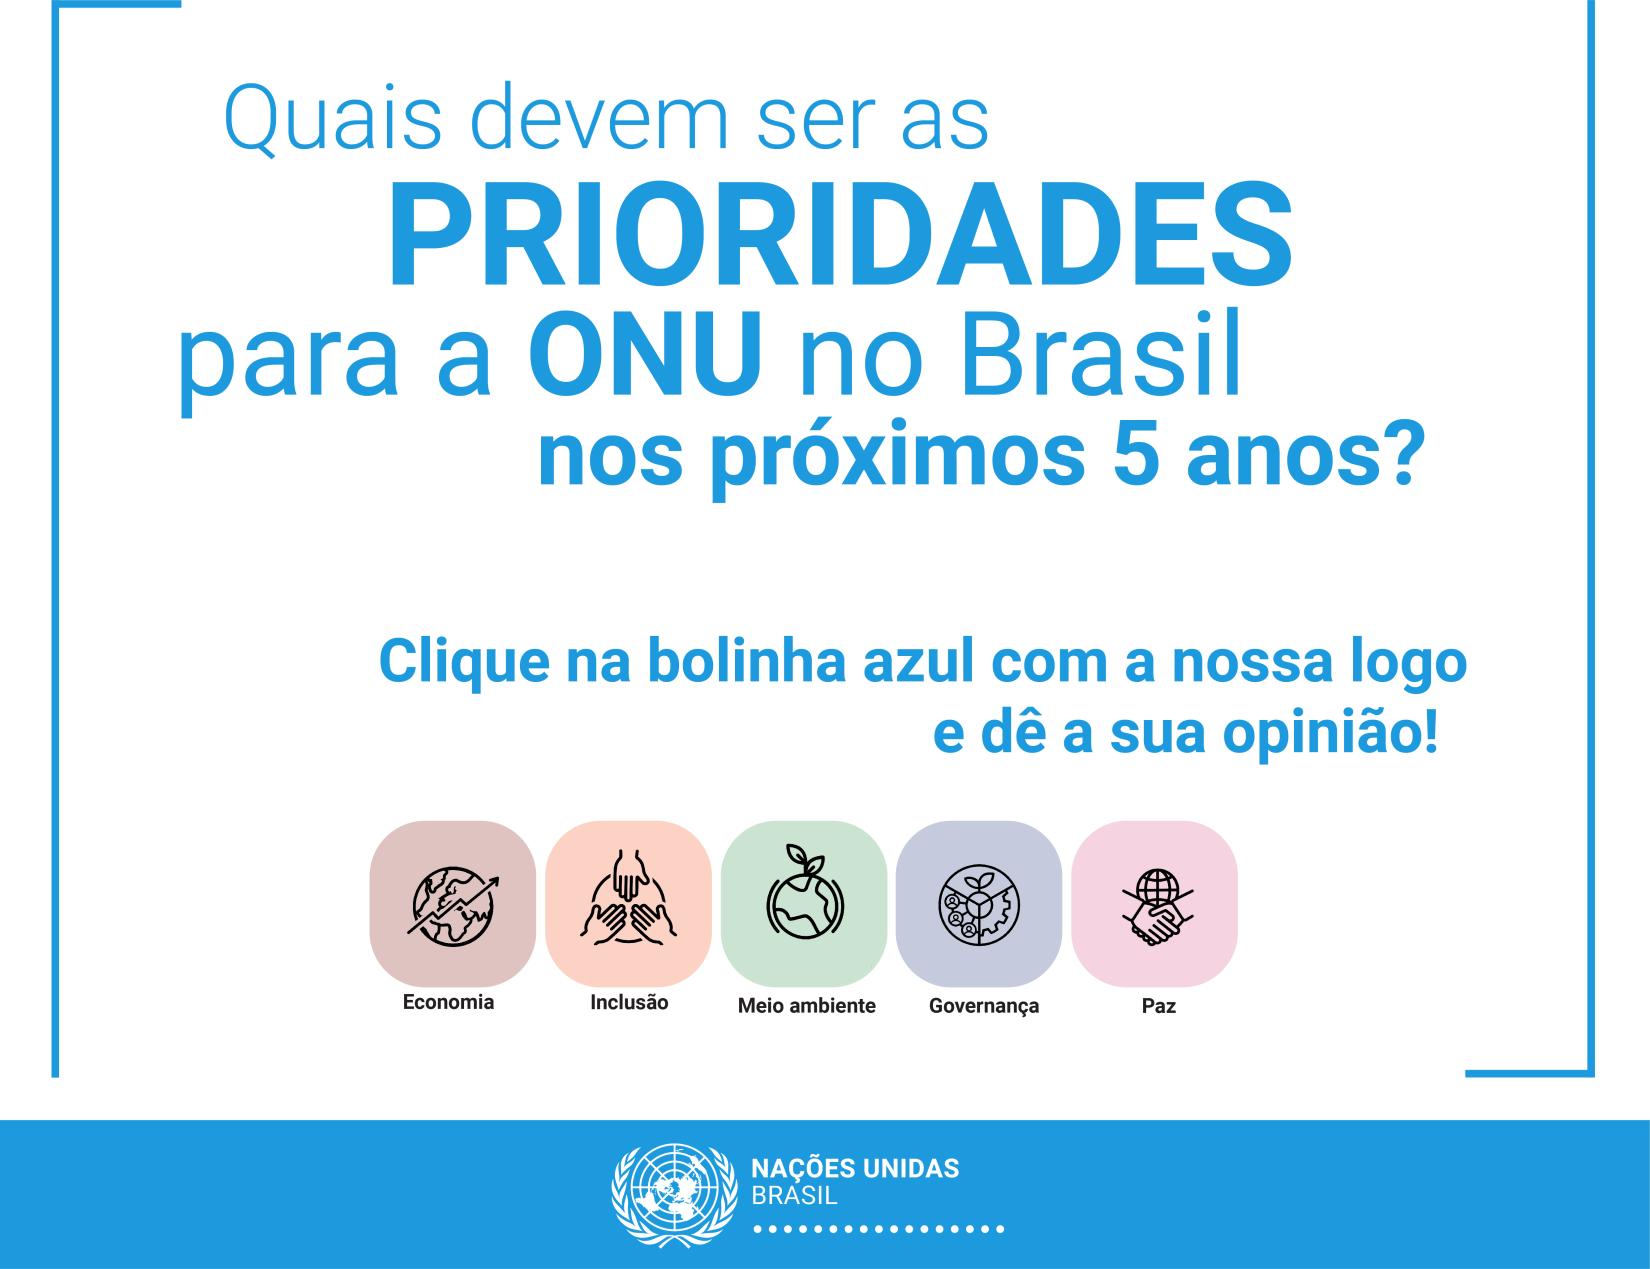 ONU faz consulta pública sobre prioridades para o Brasil